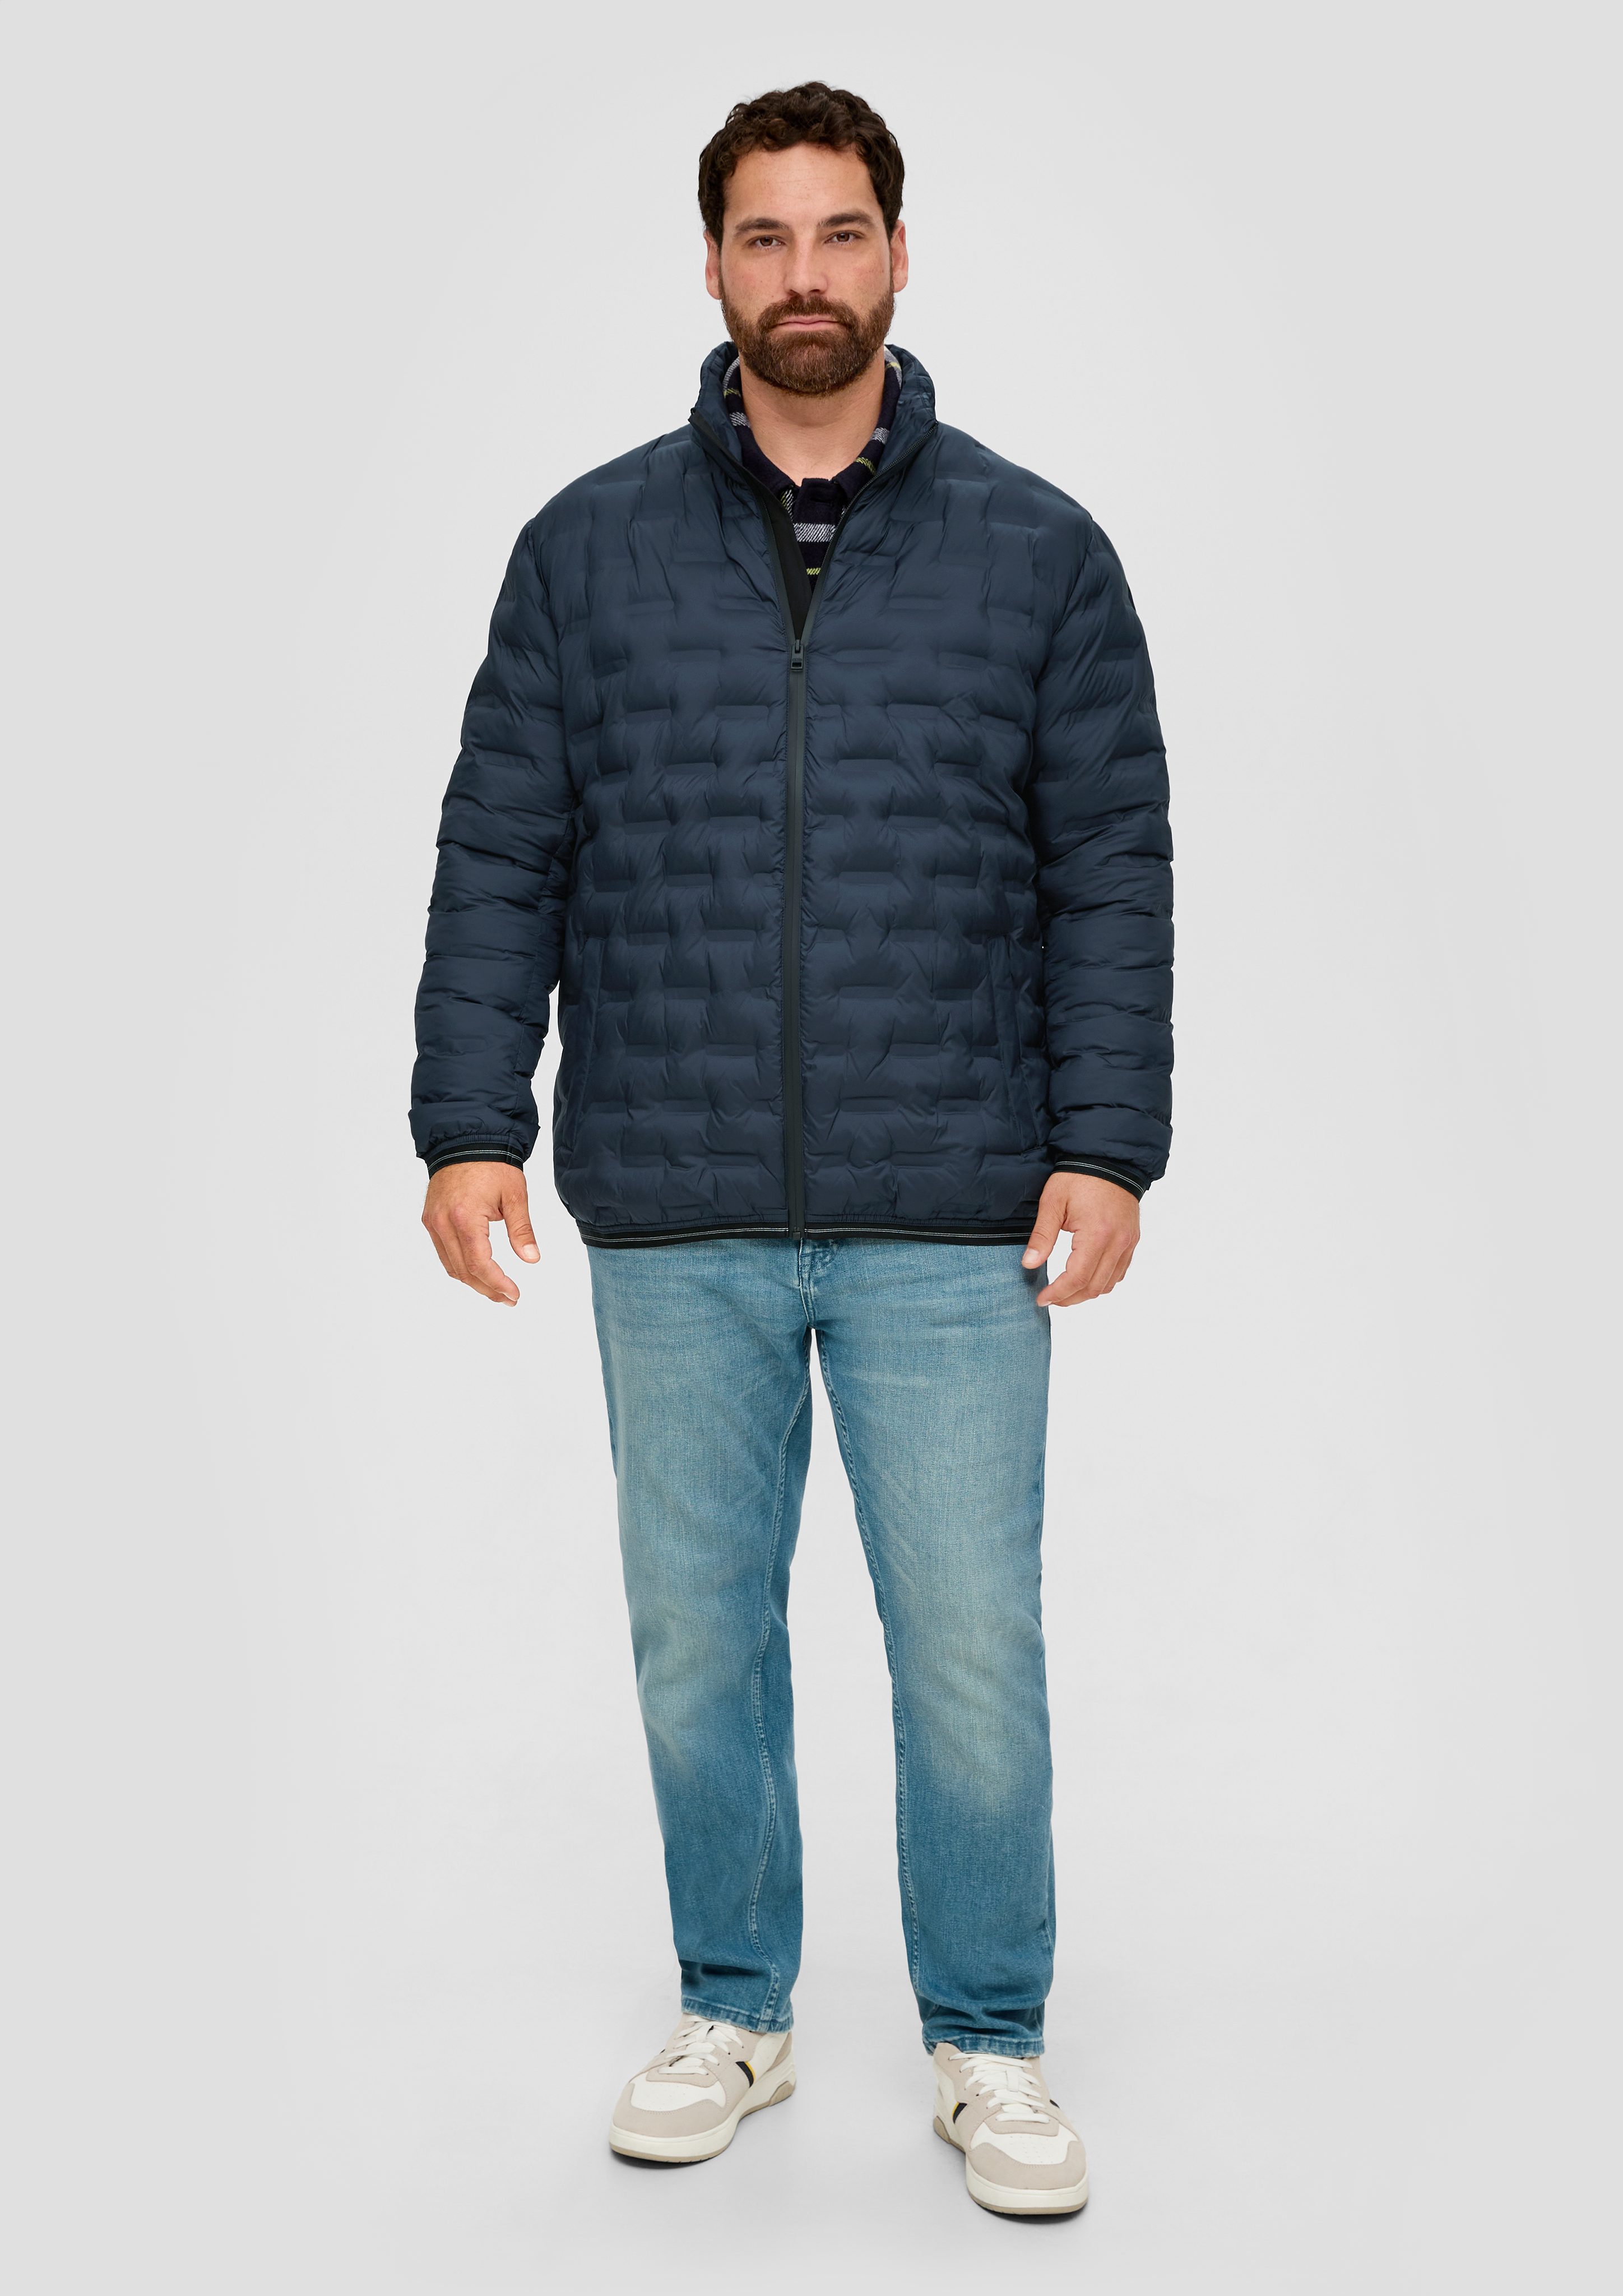 s.Oliver Outdoorjacke Jacke mit Reißverschlusstaschen navy Applikation